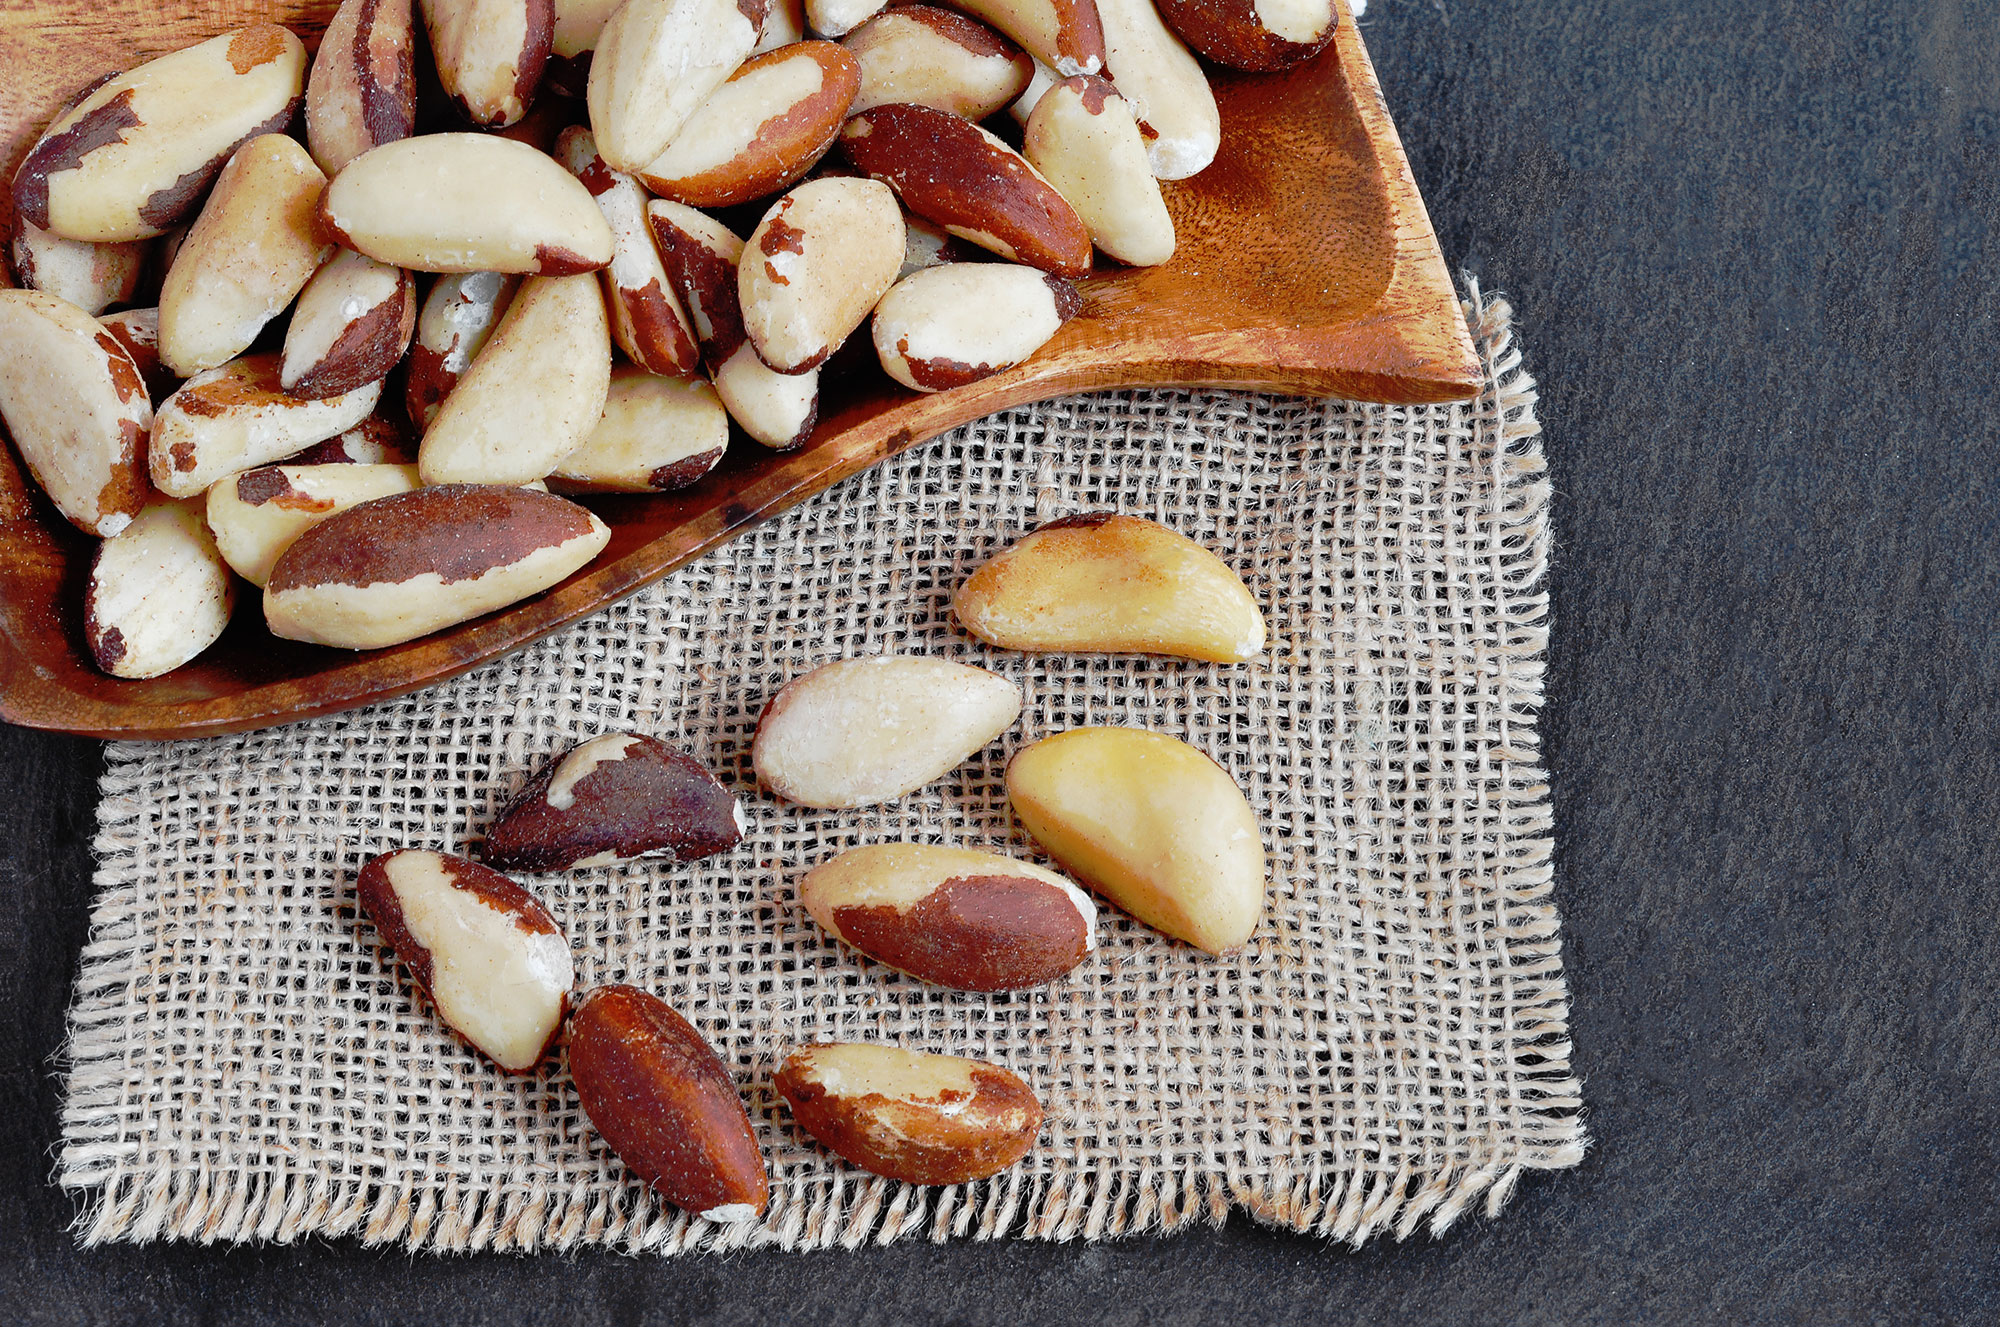 brazil nuts, foods high in methionine